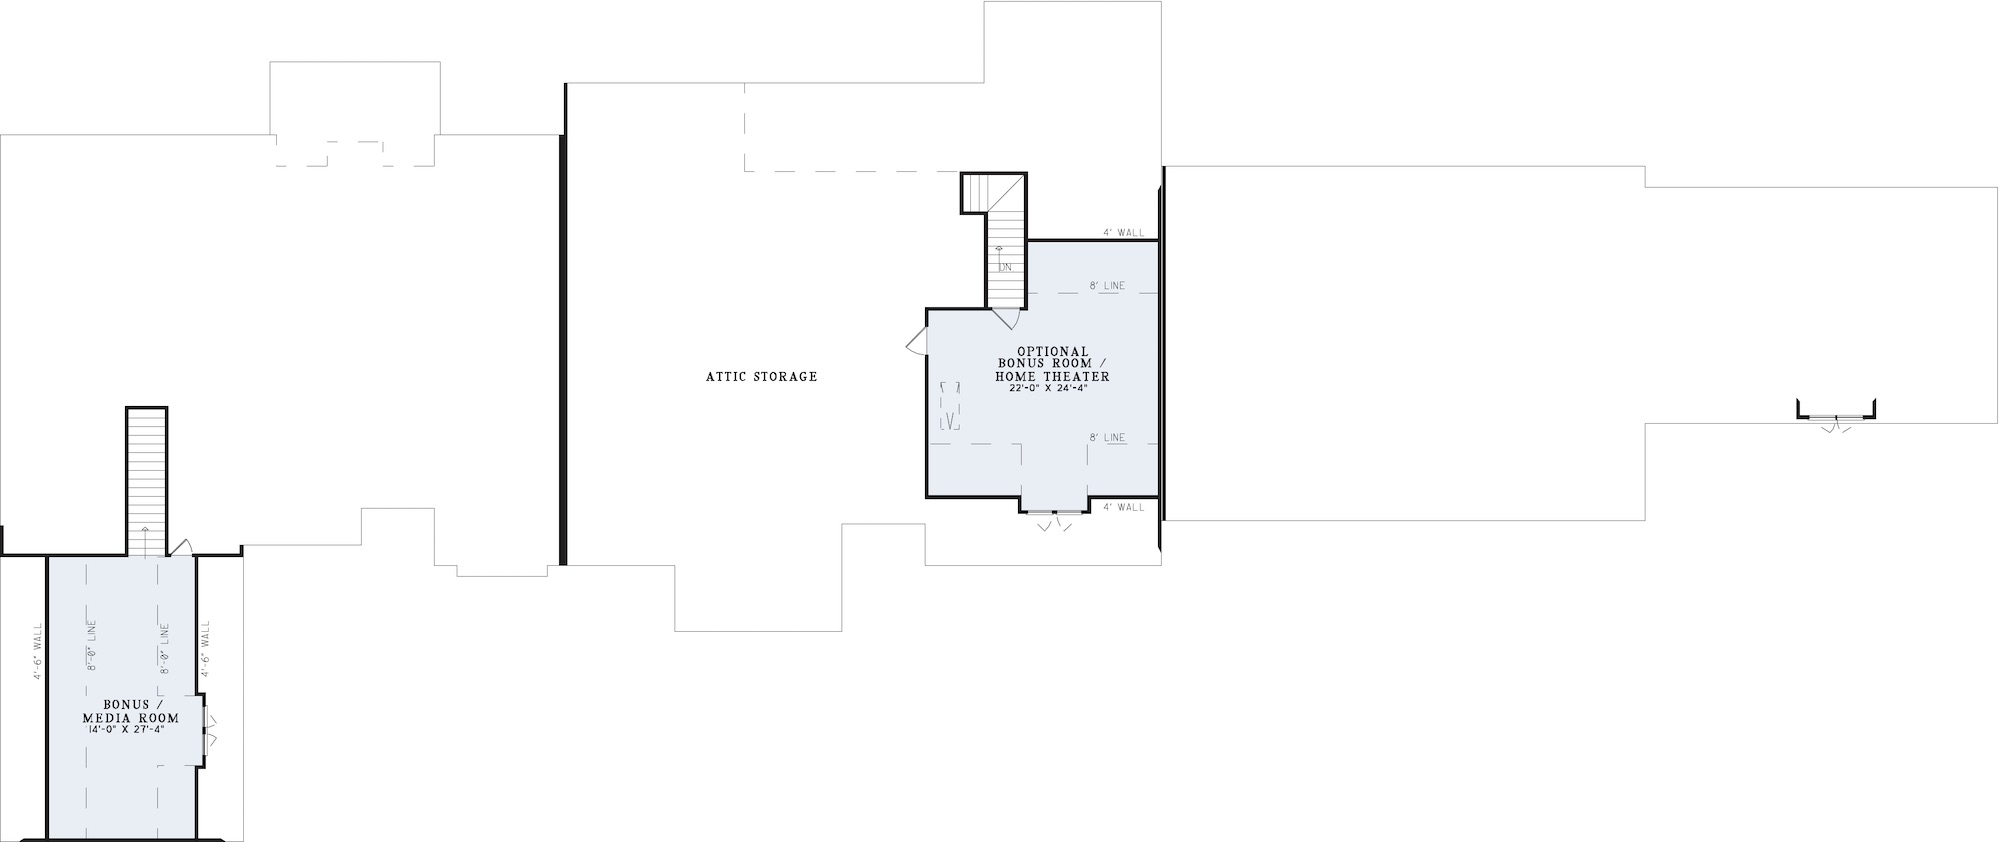 House Plan NDG 1175 Upper Floor